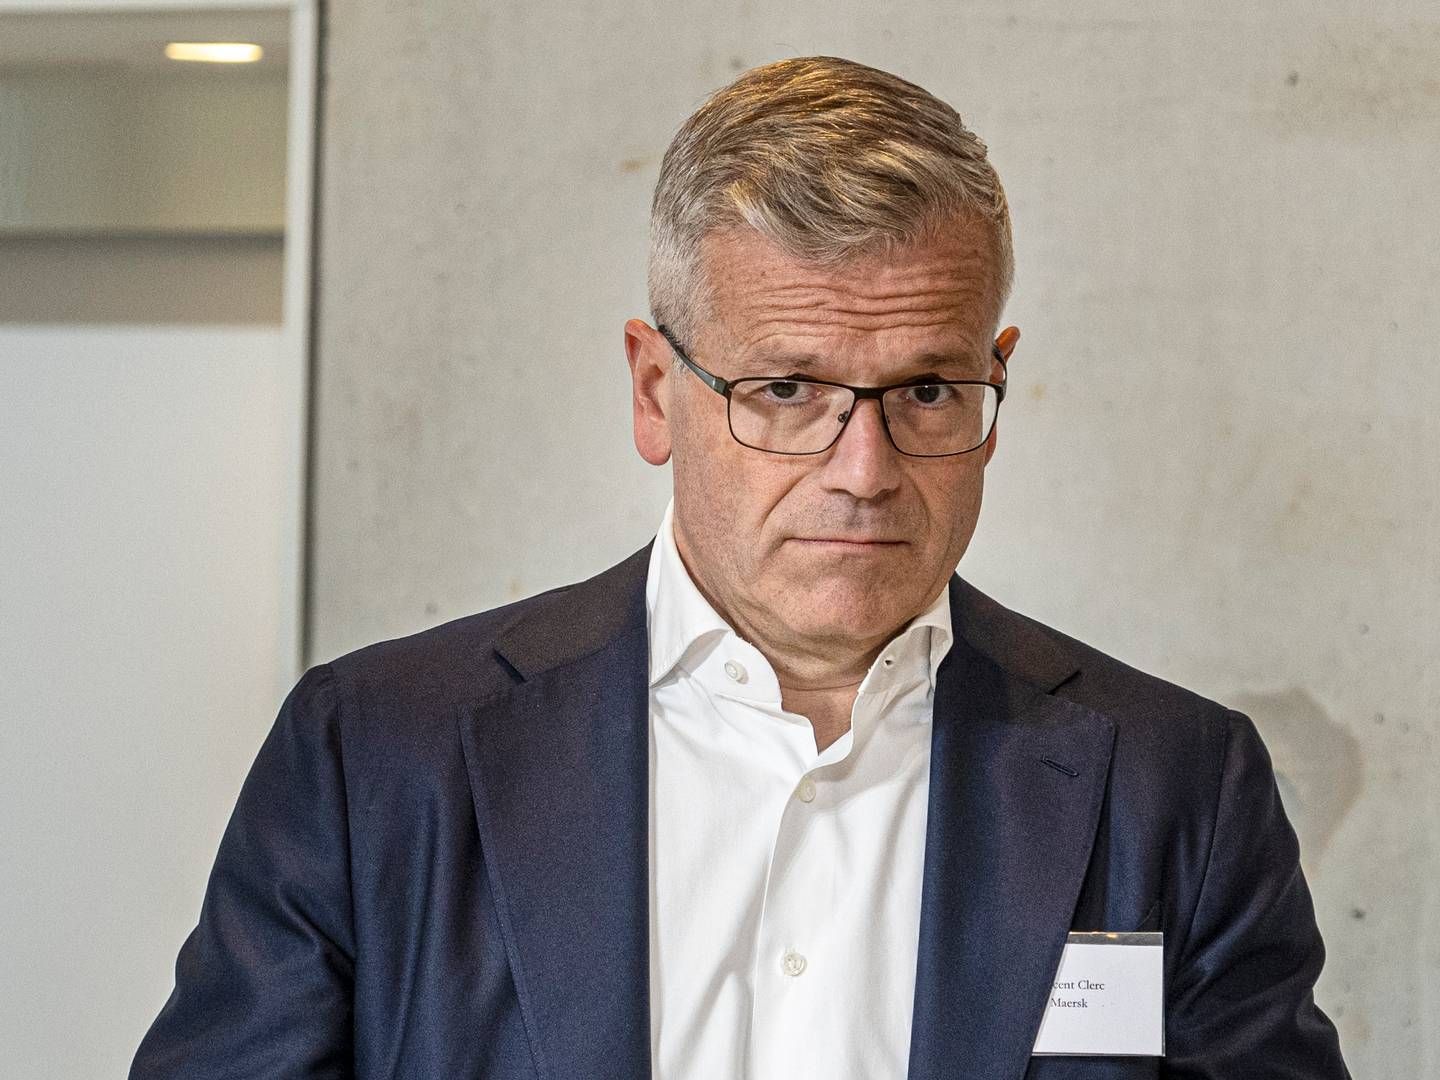 Vincent Clerc tog over som topchef i Mærsk ved årsskiftet, hvor Søren Skou stoppede på posten. | Foto: Kenneth Meyer